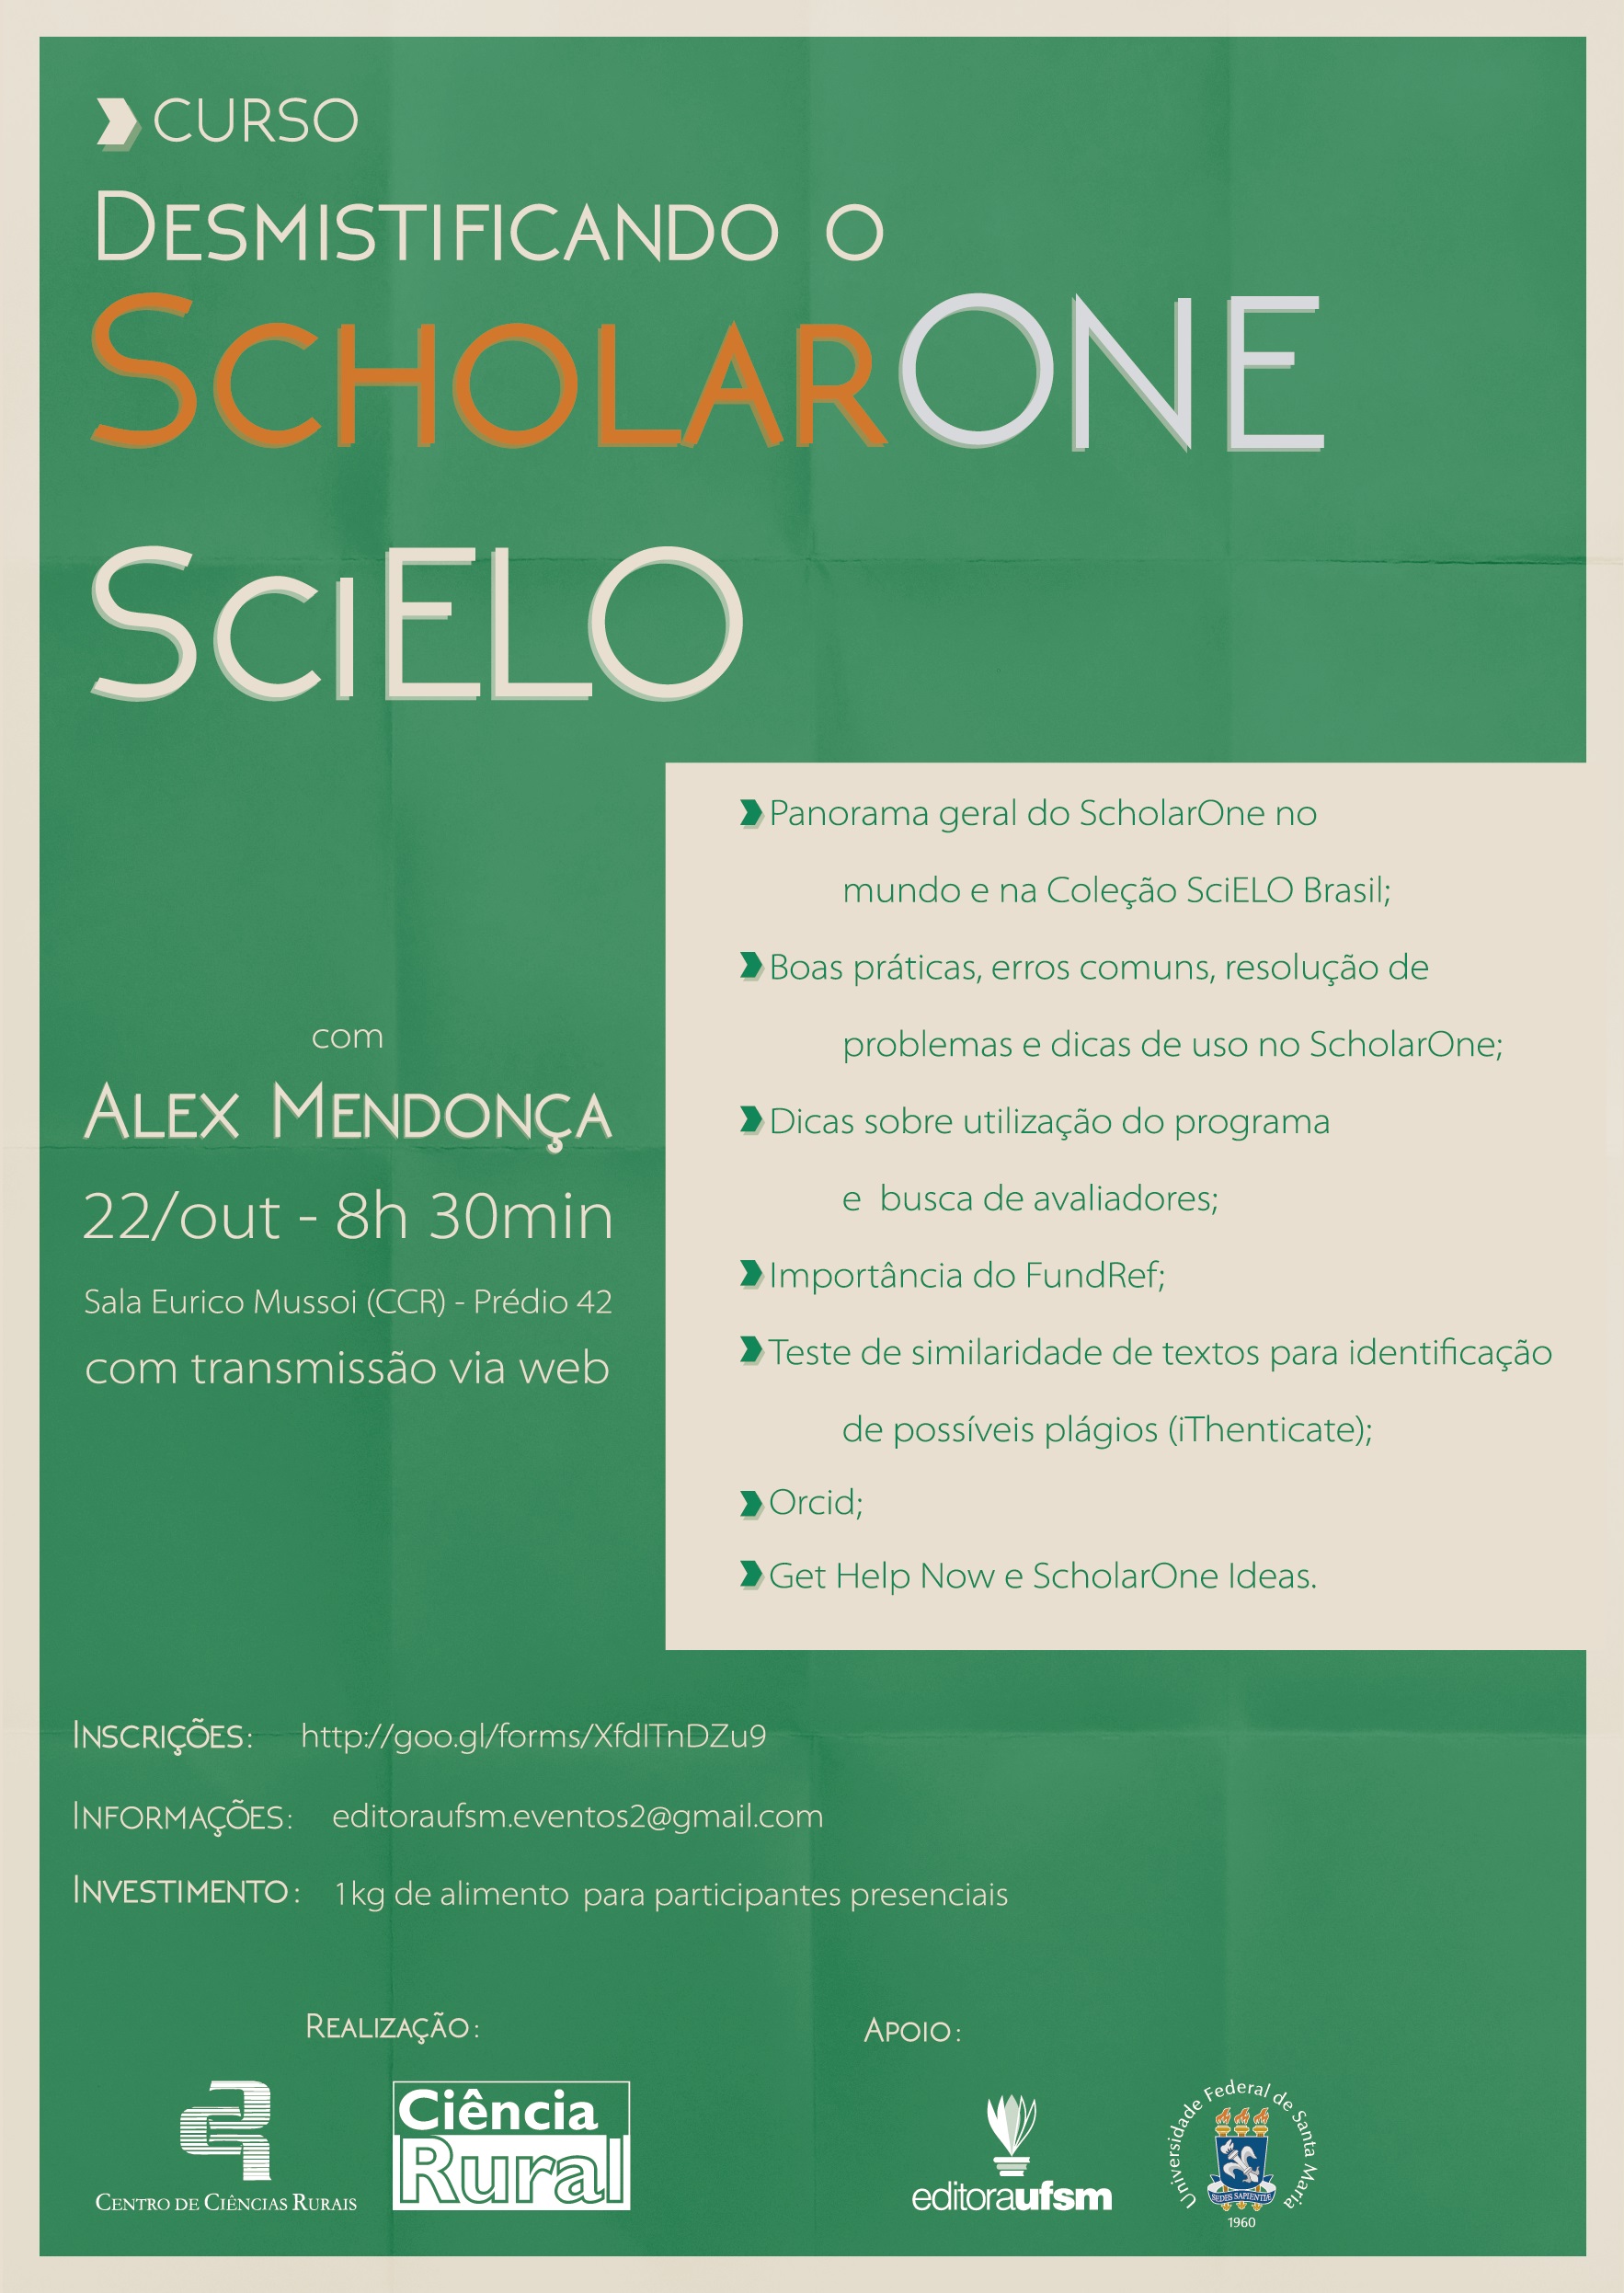 ScholarOne SciELO 1